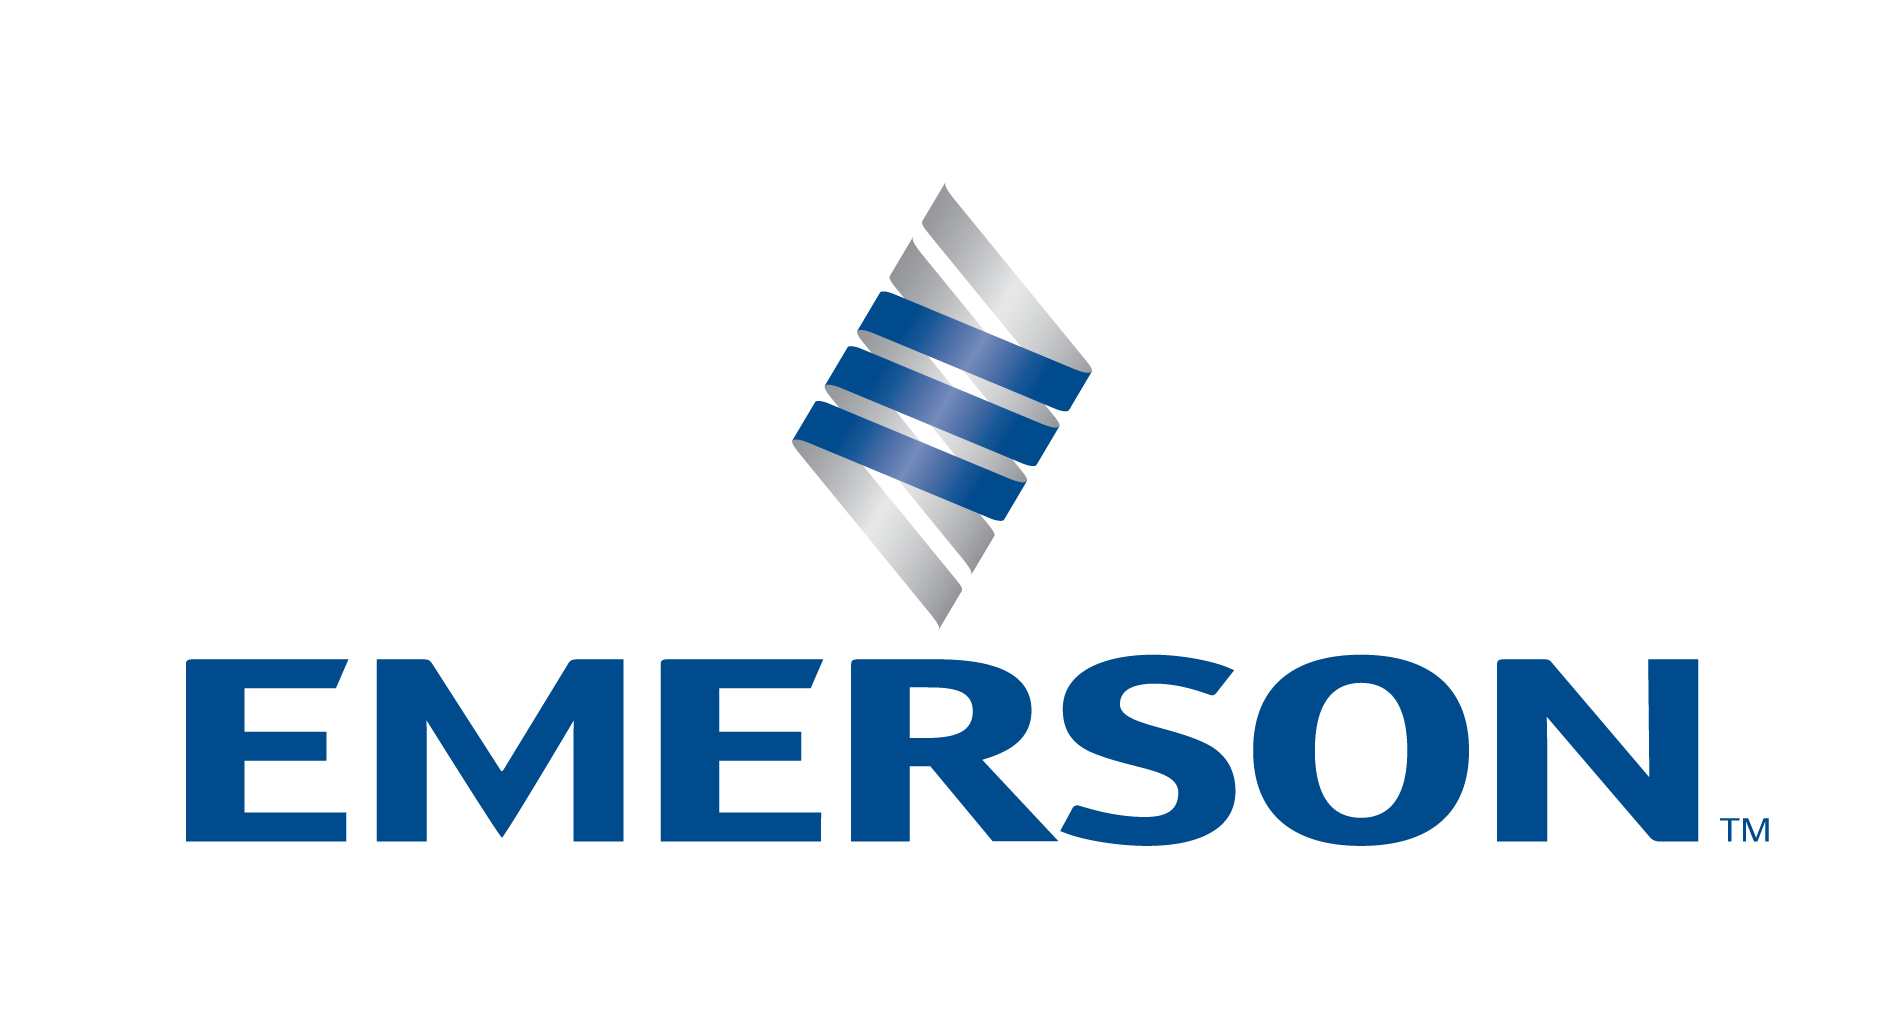 a. Logotipo de Emerson (paso)